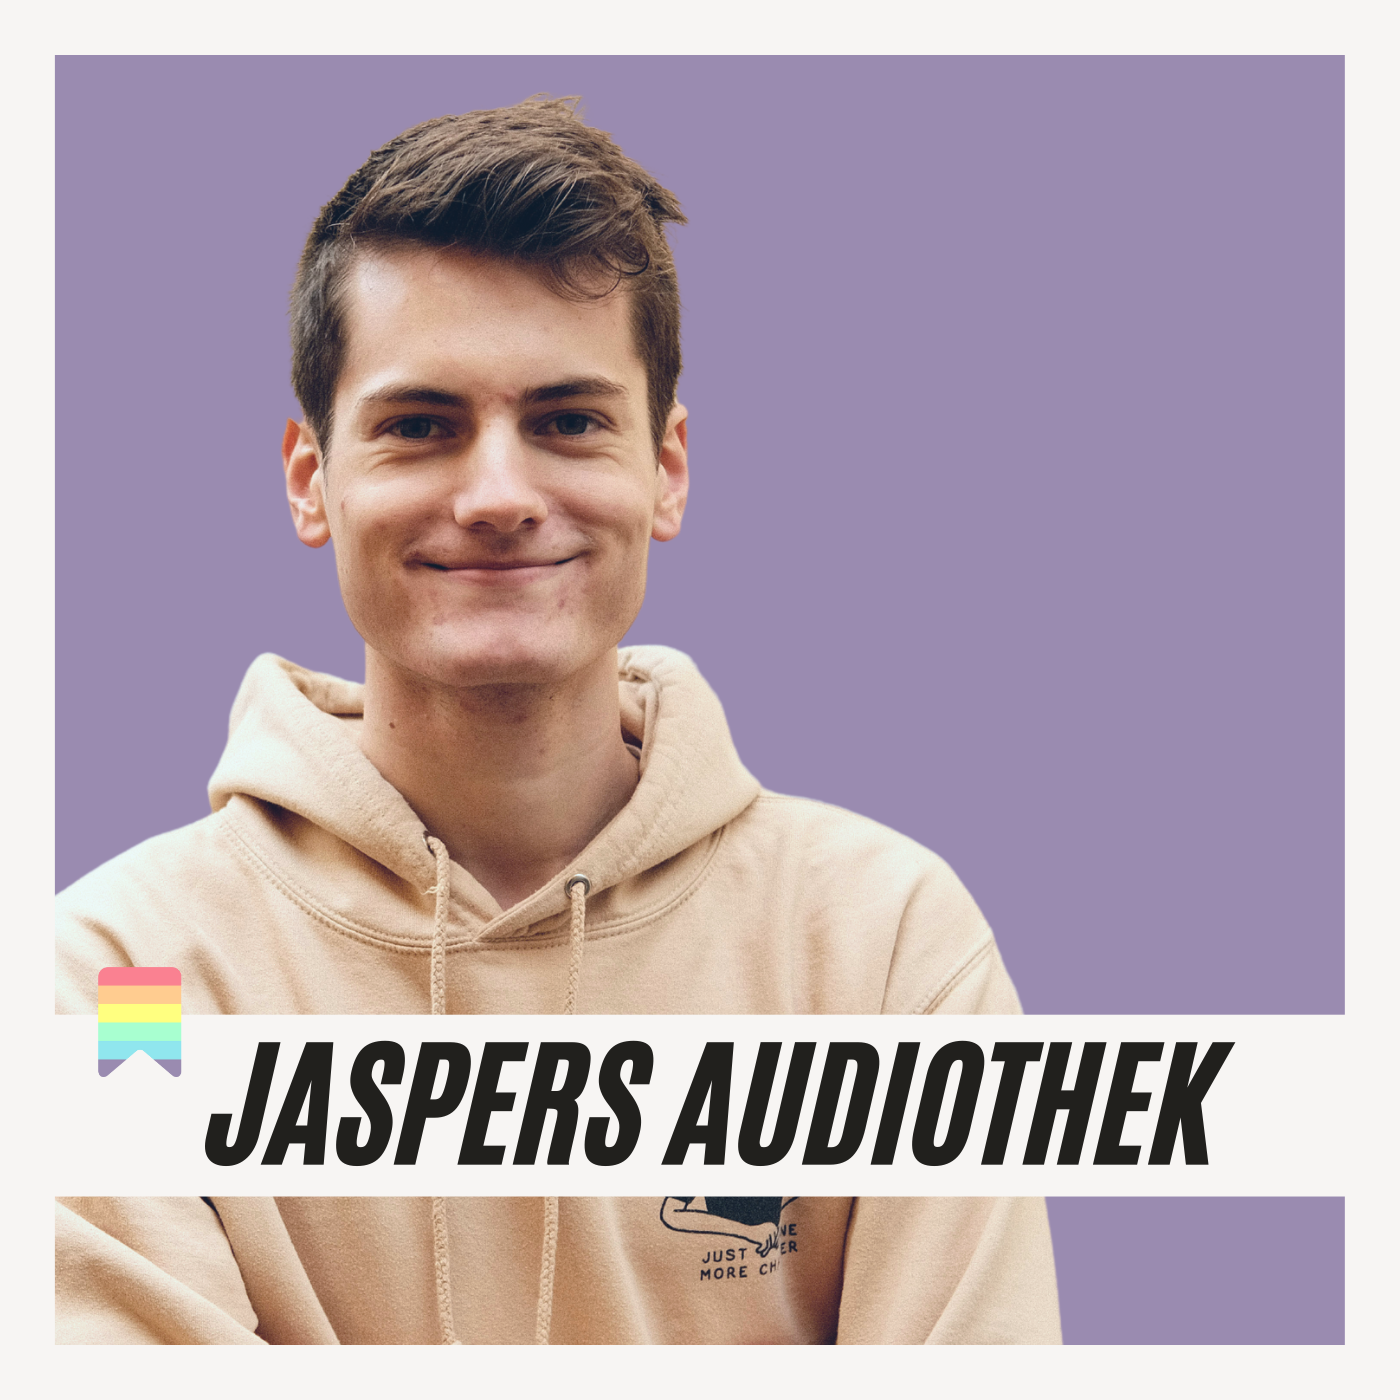 Die Story hinter „Jaspers Audiothek“